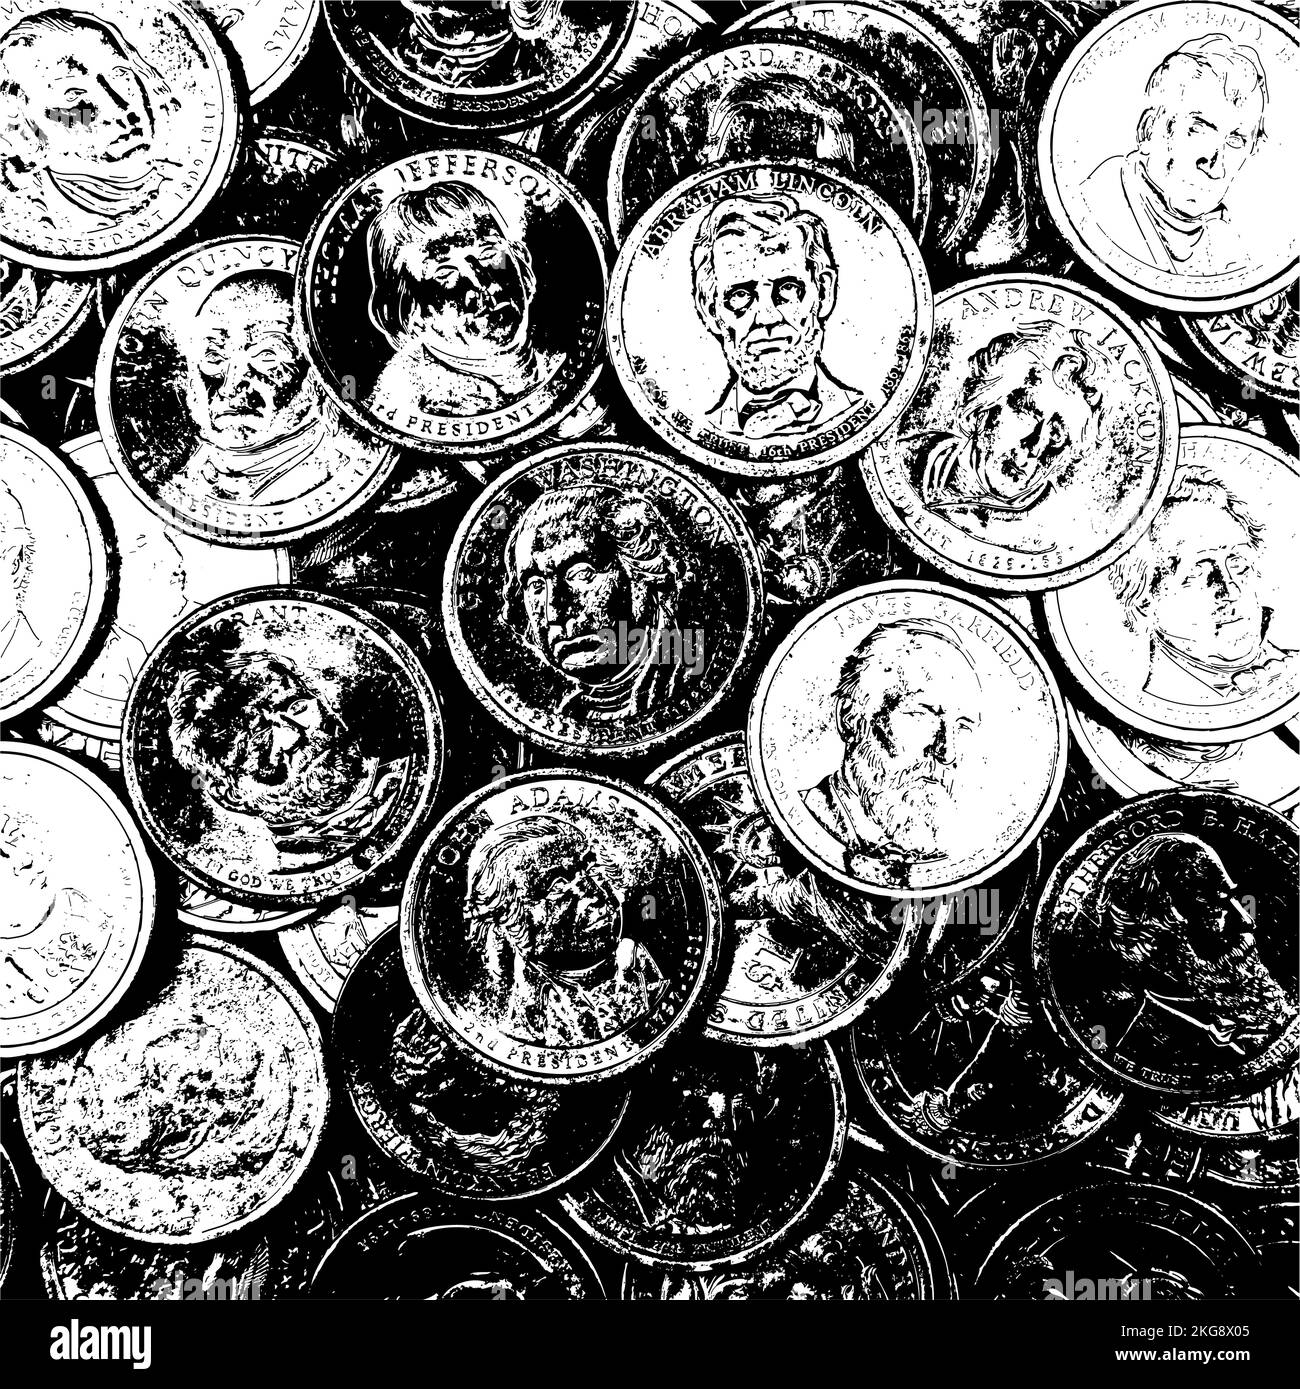 US-Münzen mit Porträts ehemaliger Präsidenten. Collage schwarz-weiß Hintergrund. Stock Vektor